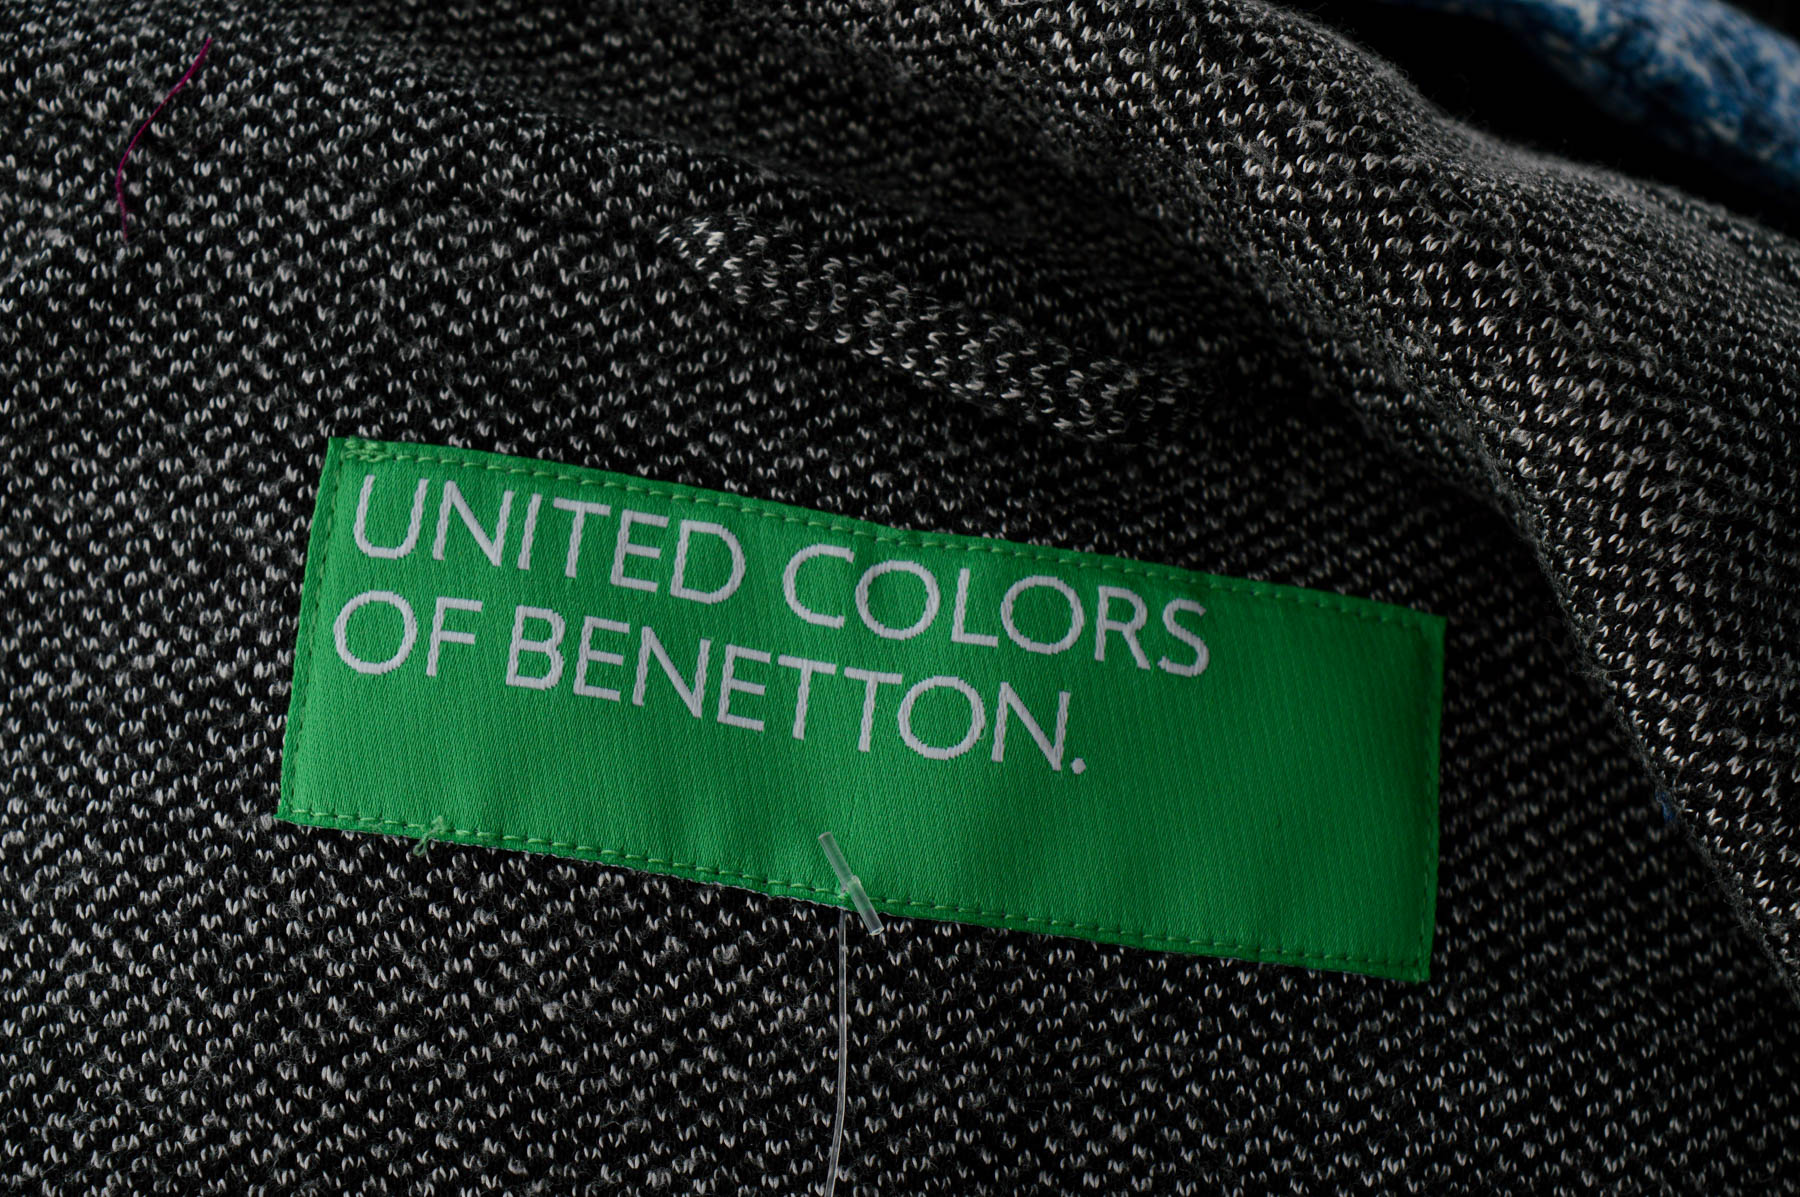 Sacou de damă - United Colors of Benetton - 2